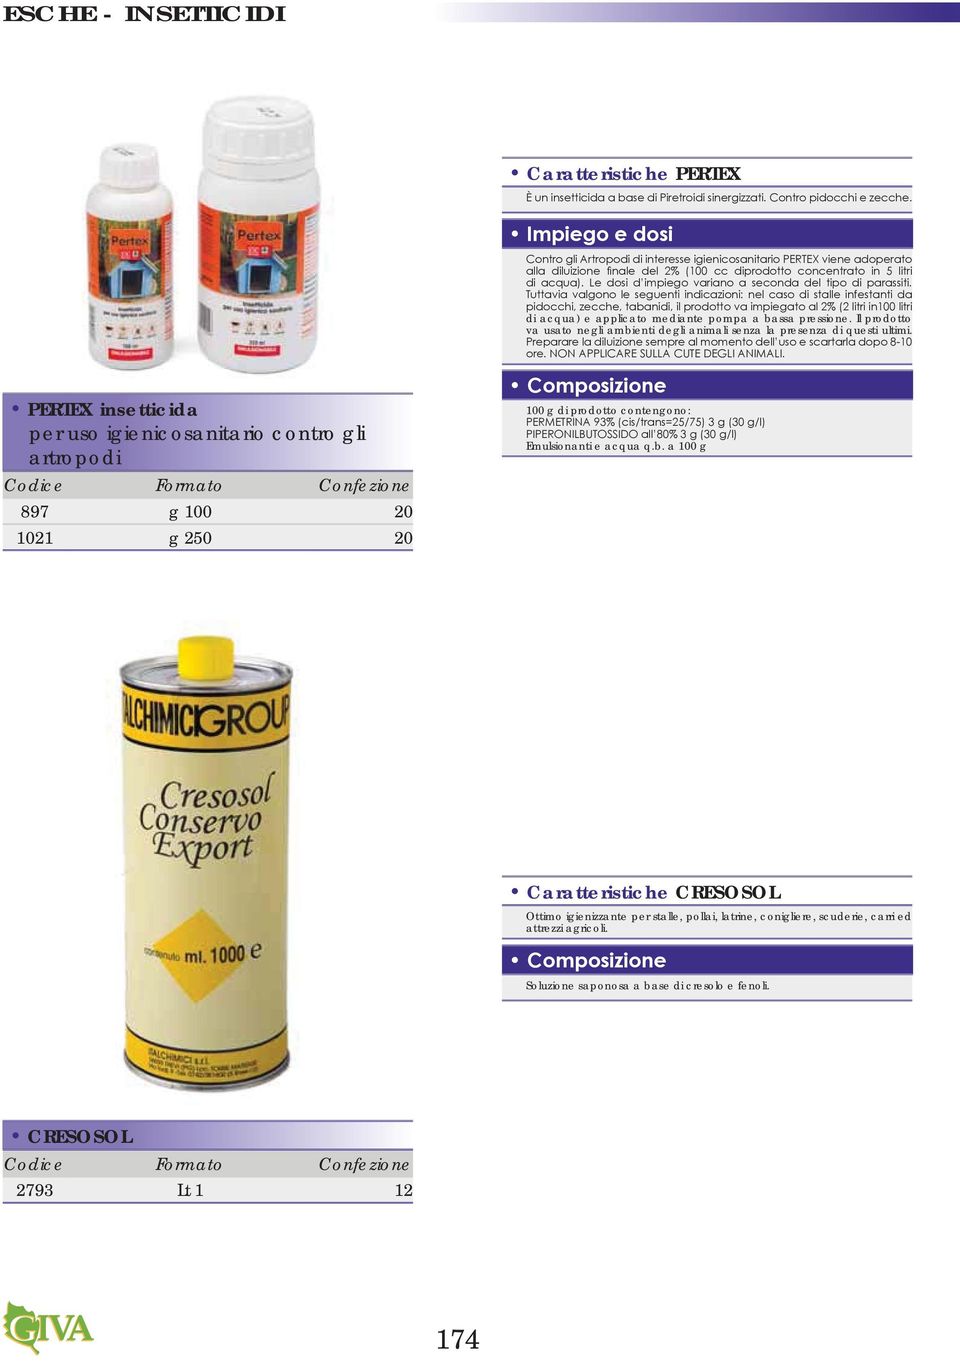 PERTEX insetticida per uso igienicosanitario contro gli artropodi 897 g 100 20 1021 g 250 20 100 g di prodotto contengono: